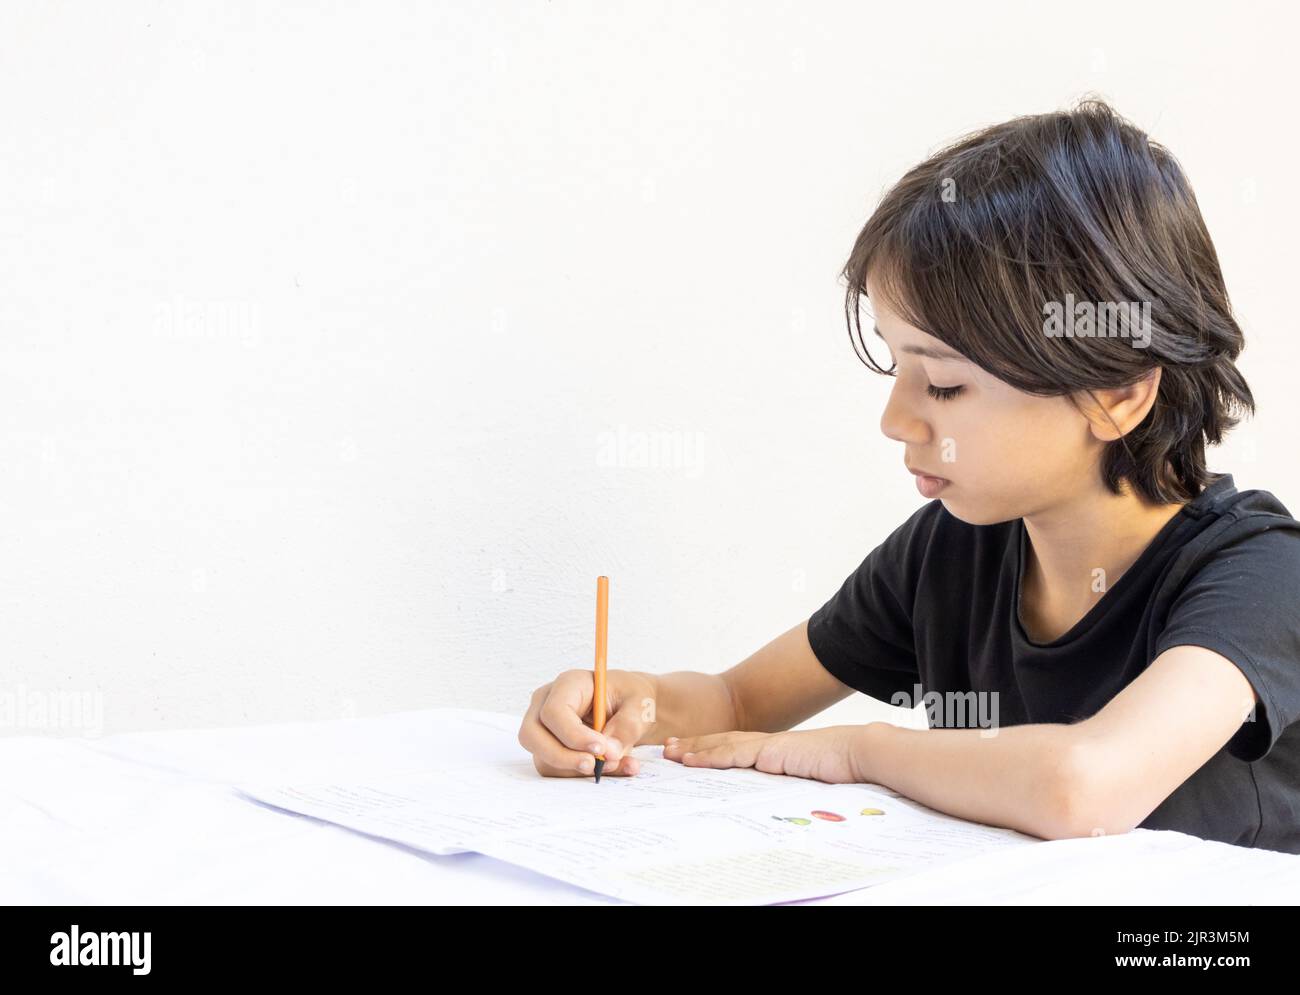 Un jeune adolescent d'asie de l'est étudie l'écriture avec un stylo et un carnet à la table. Le garçon qui fait ses devoirs à l'école à la maison. T-shirt noir Banque D'Images